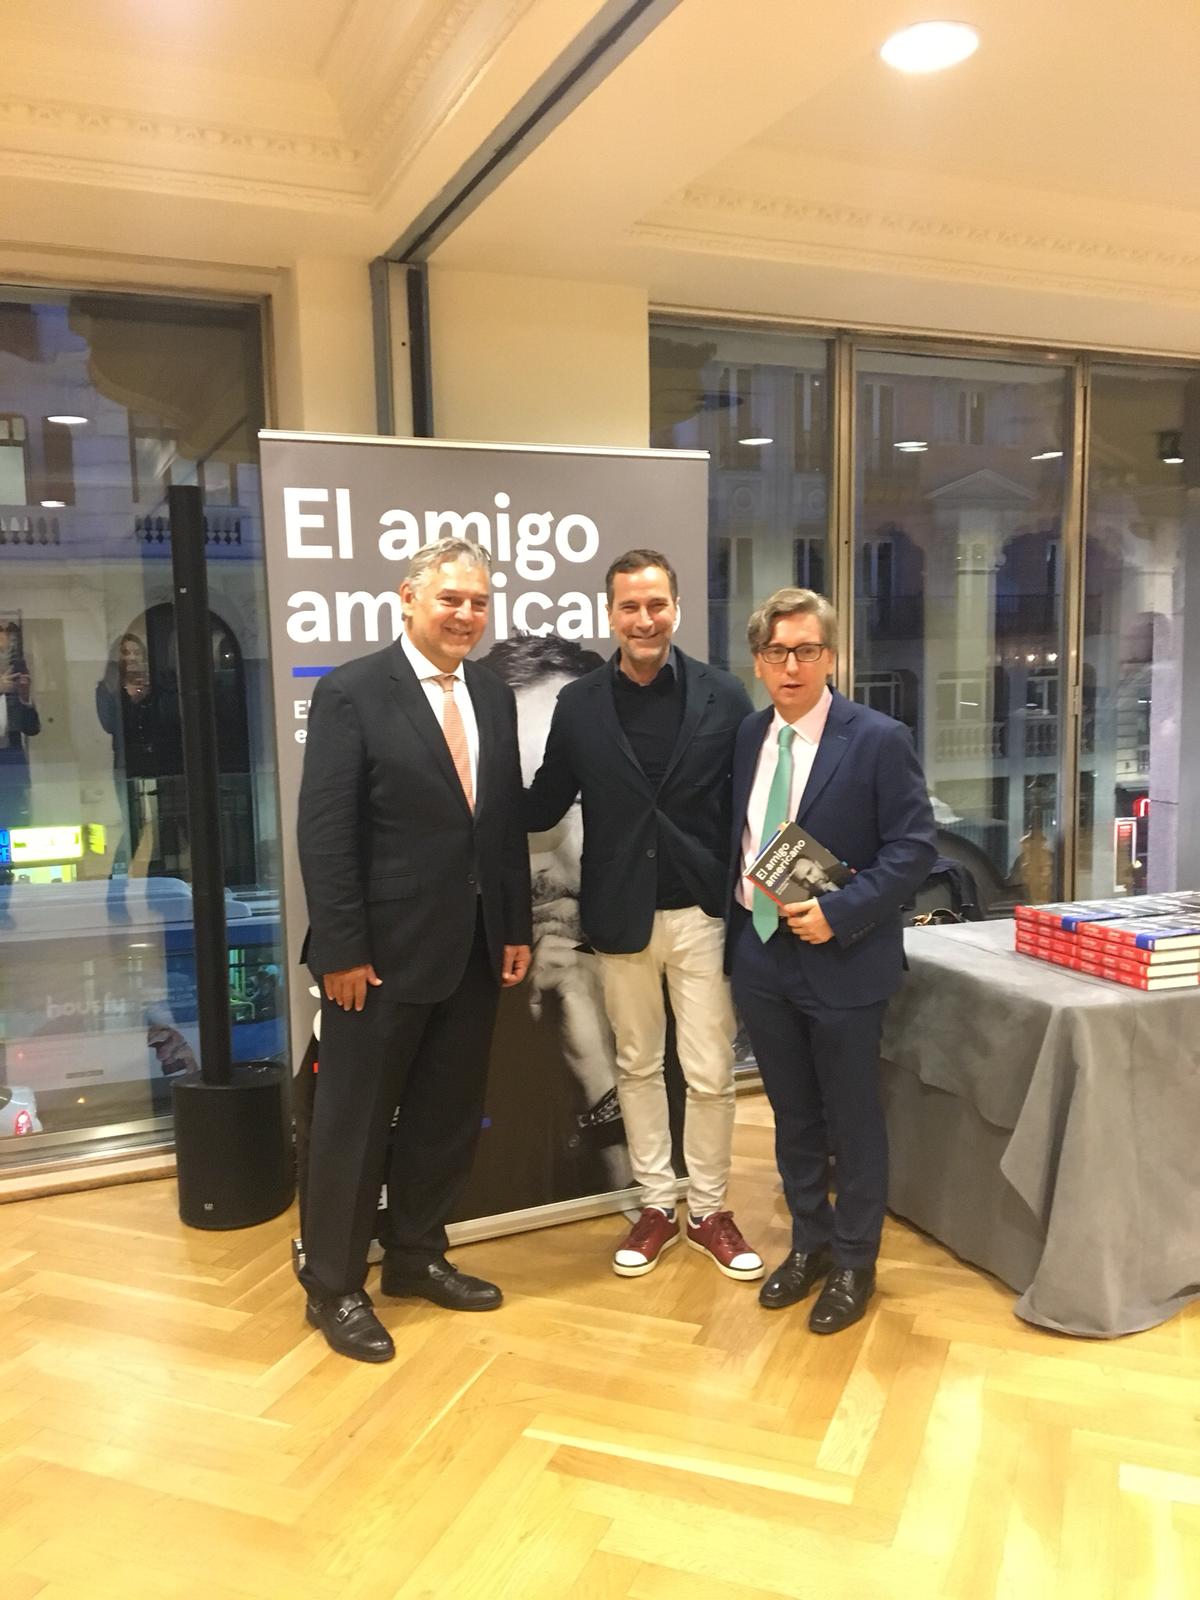 James Costos, el embajador de EE UU que luchó por los derechos LGBTI en España, recibe un homenaje en Madrid